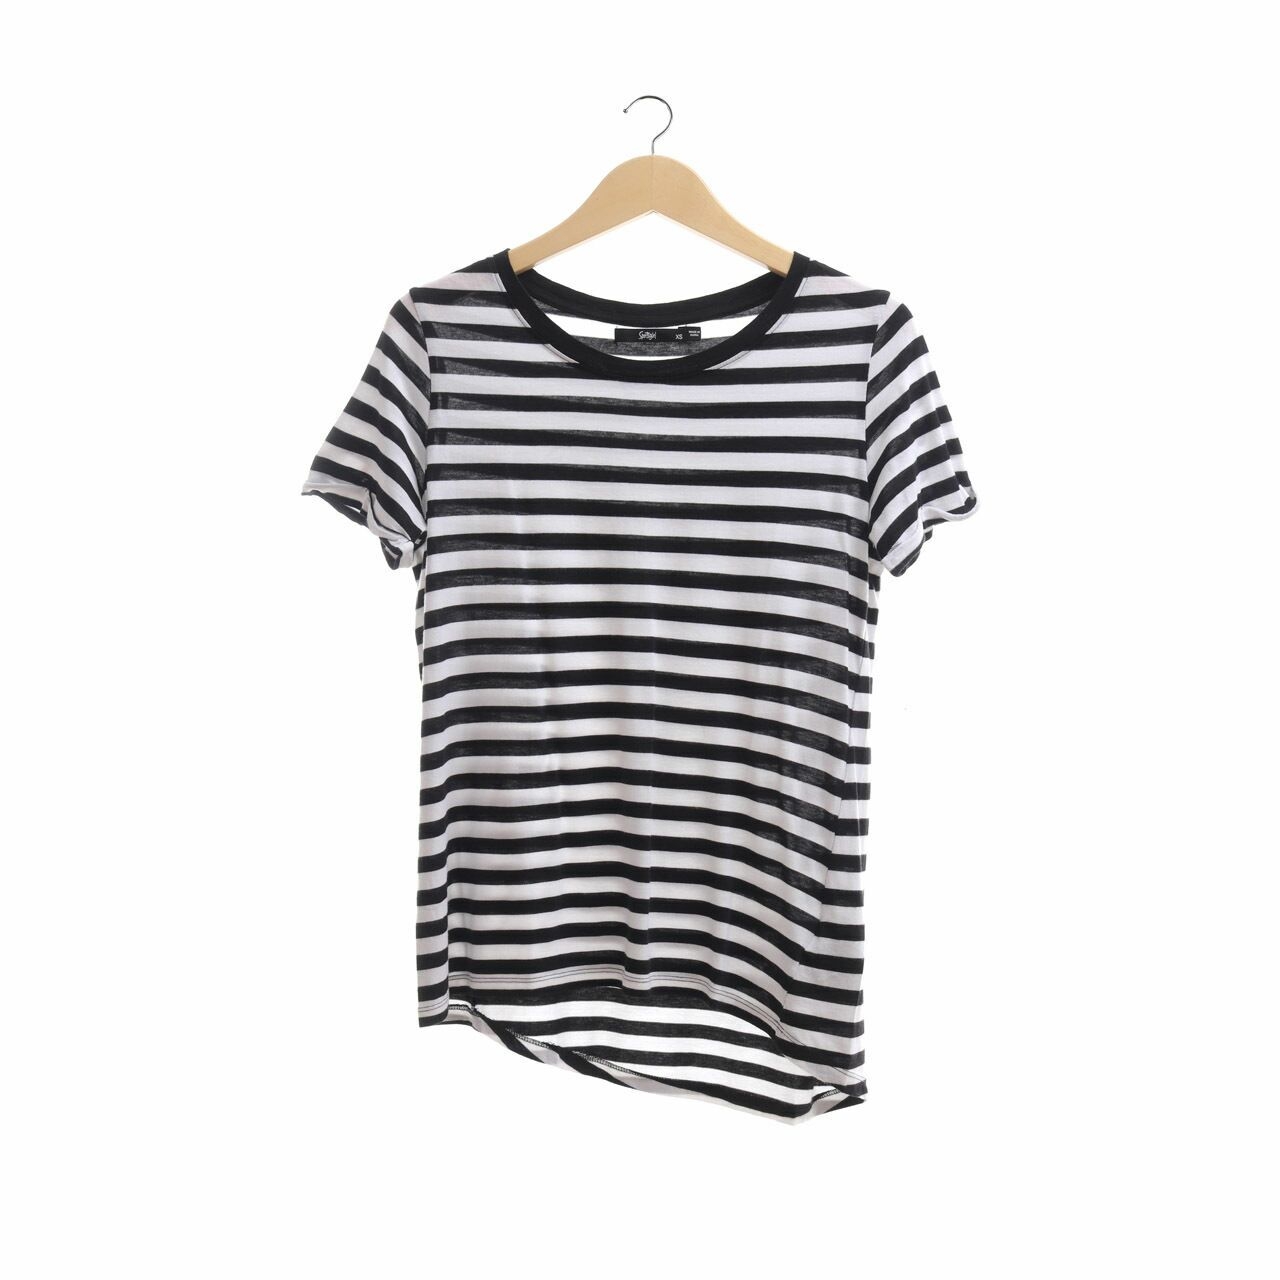 Sportsgirl Black & White Striped T-Shirt